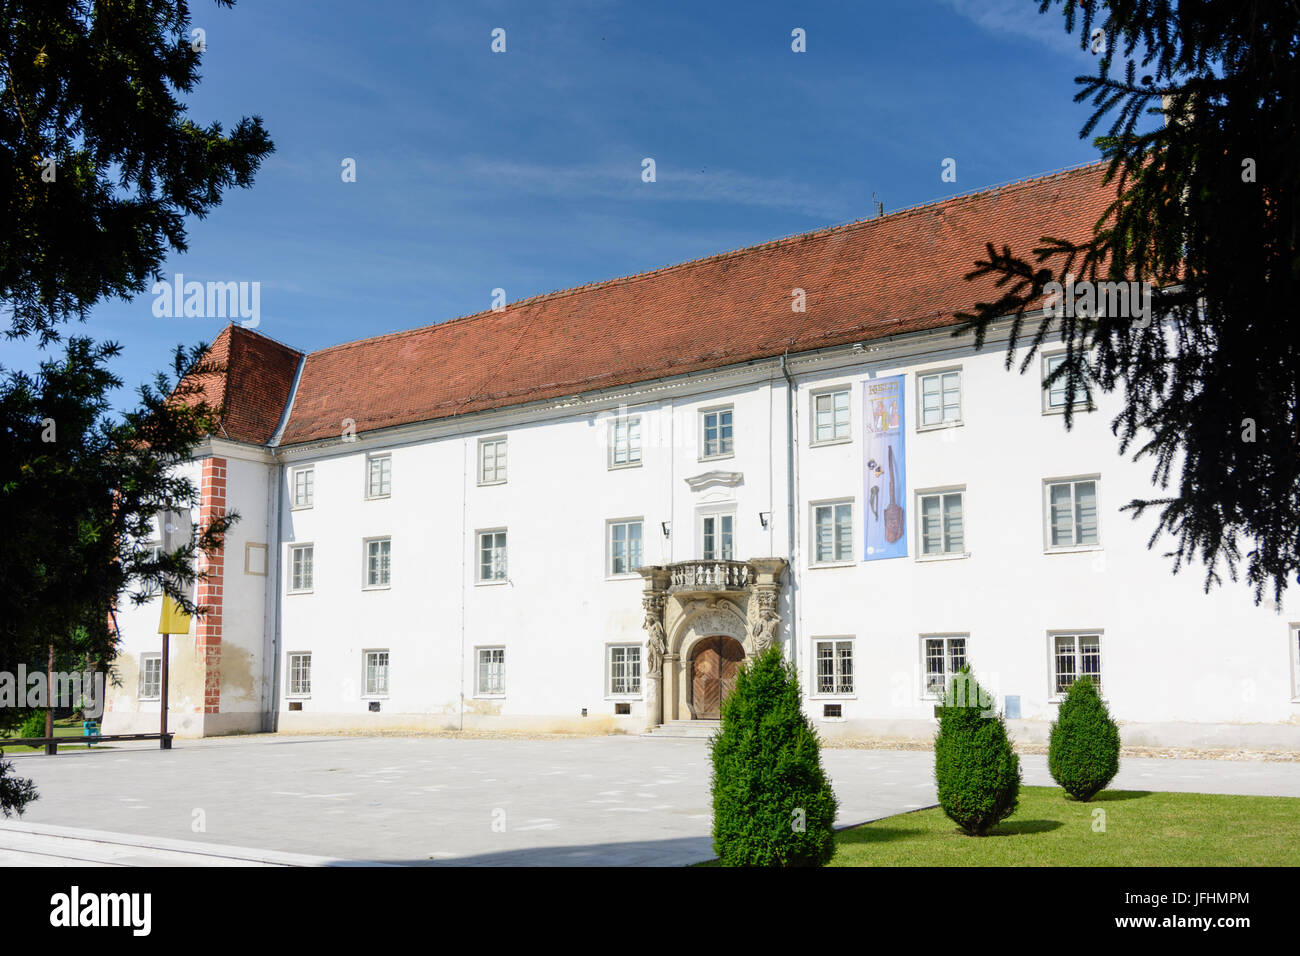 https://c8.alamy.com/comp/JFHMPM/castle-murska-sobota-slovenia-JFHMPM.jpg